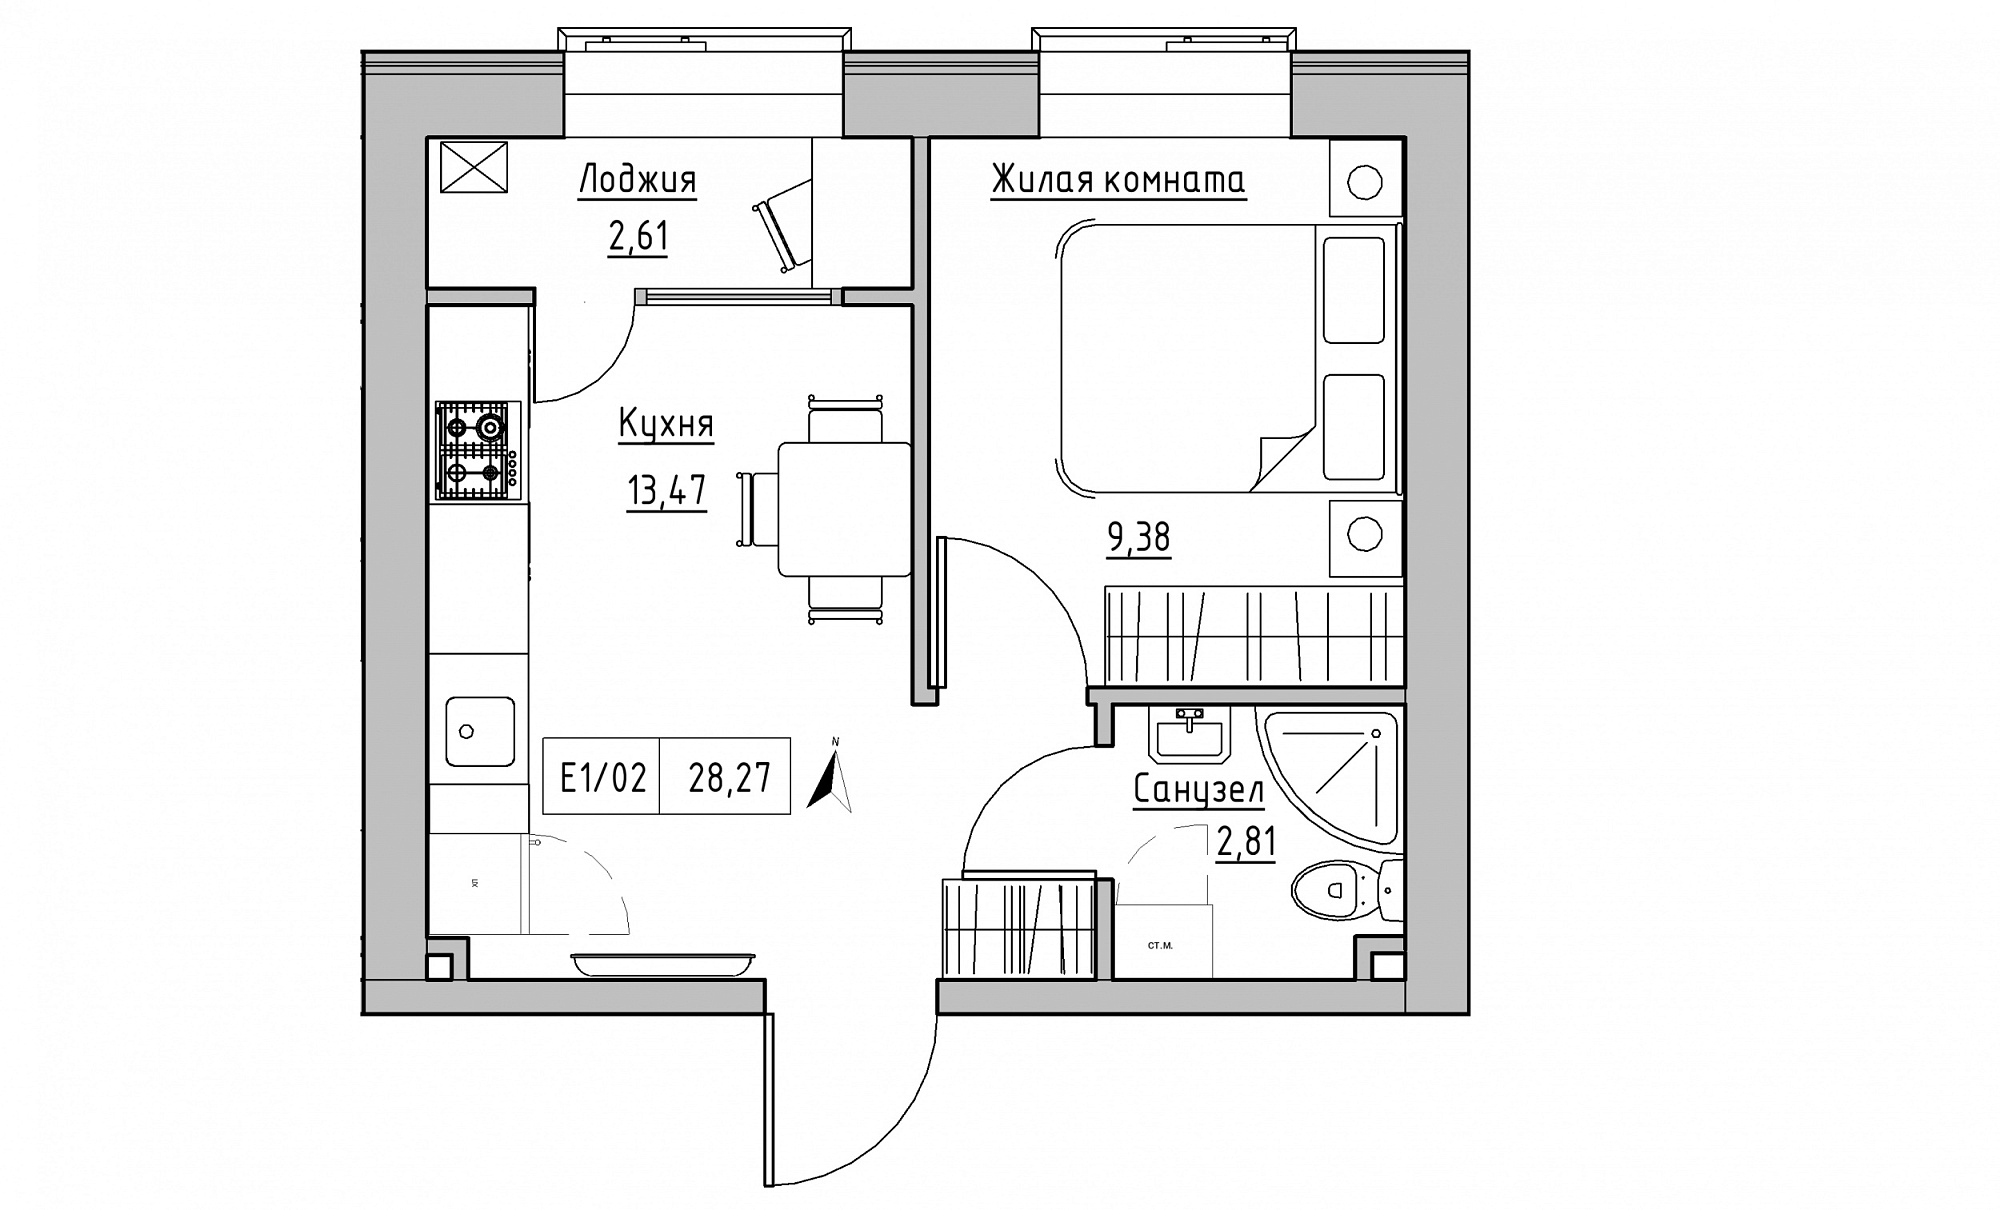 Планировка 1-к квартира площей 28.27м2, KS-015-03/0015.